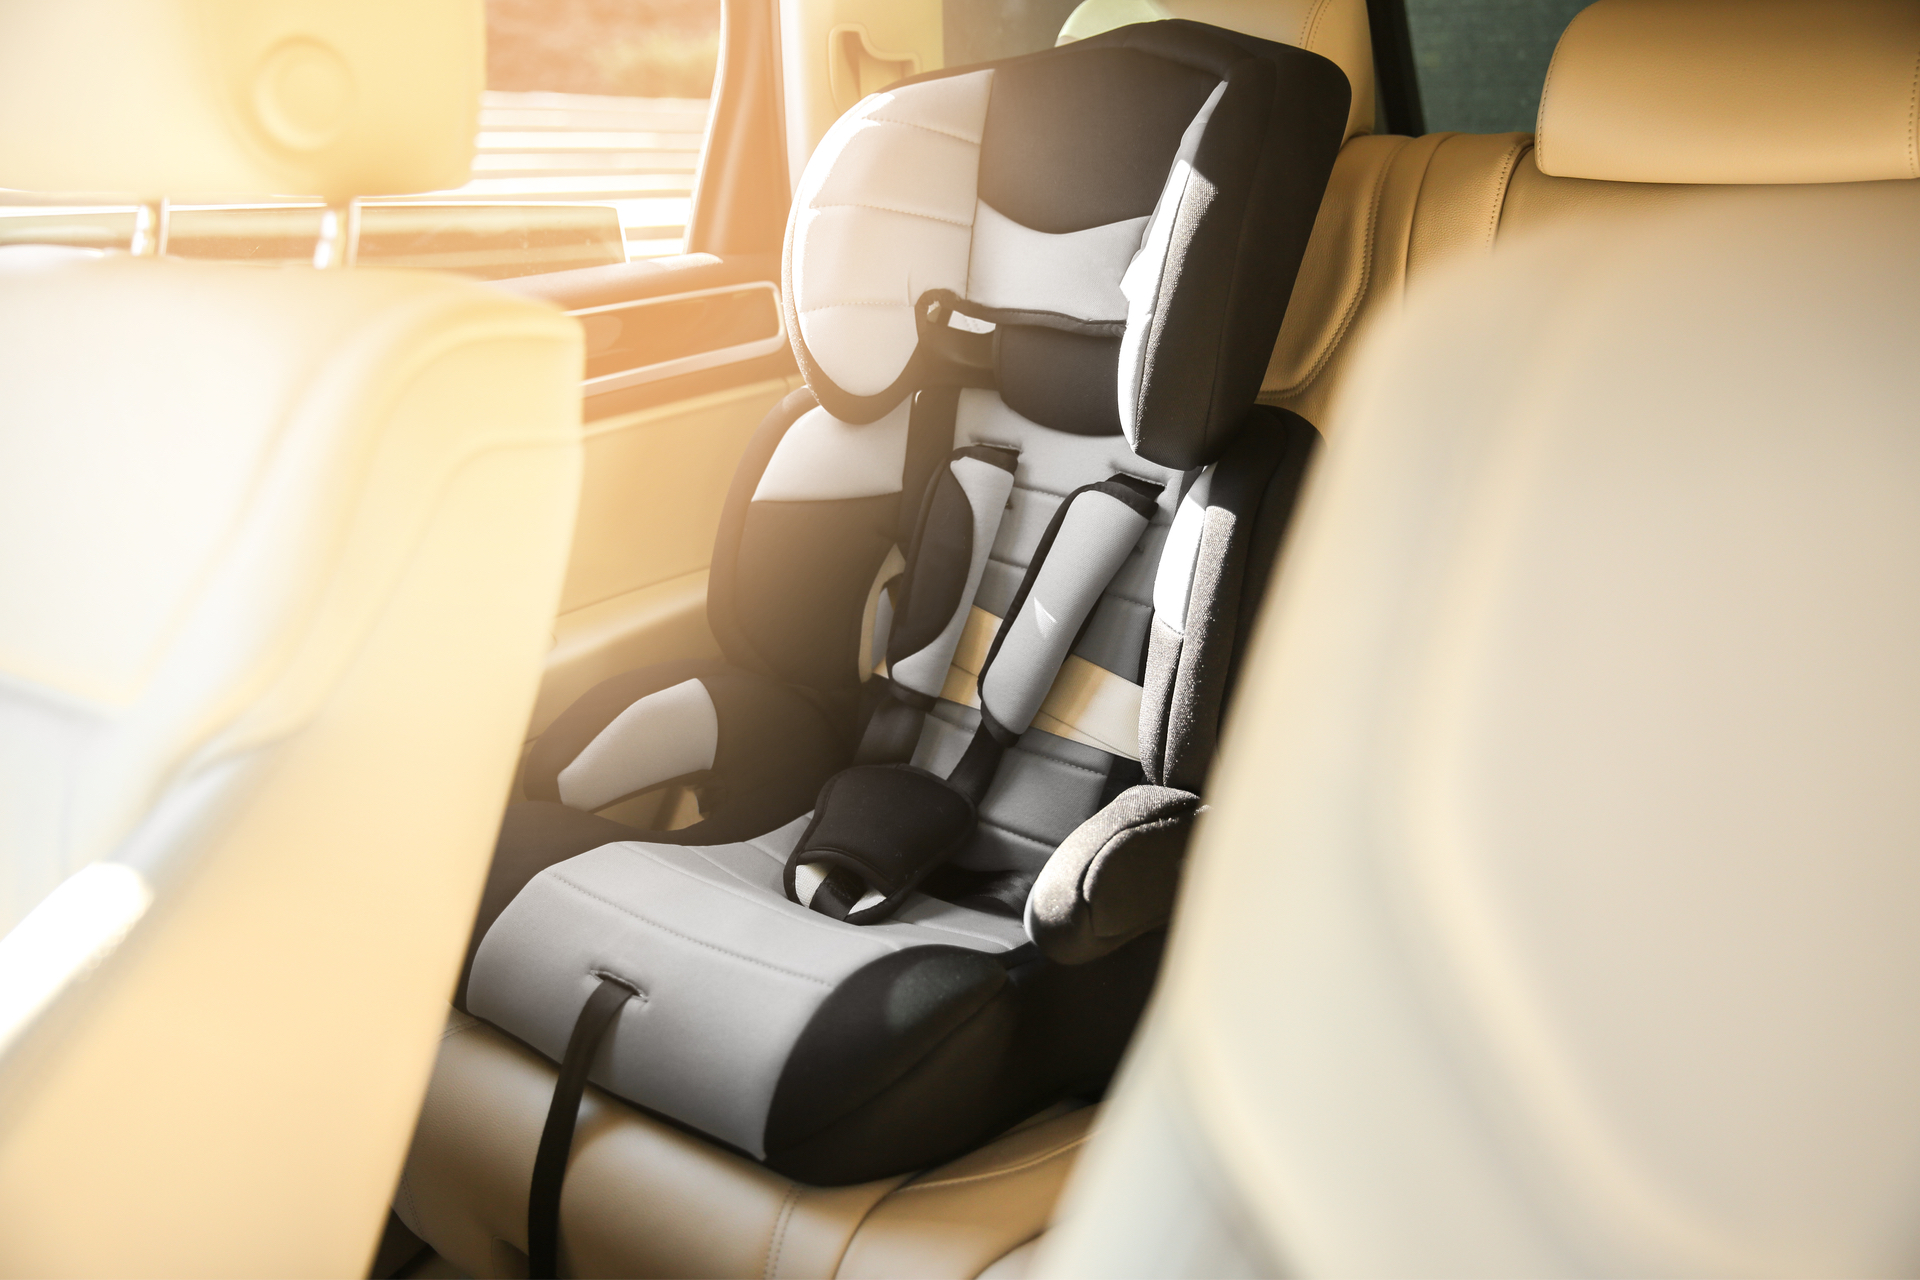 Sitzerhöhung im Auto: Ab wann dürfen Kinder sie benutzen?